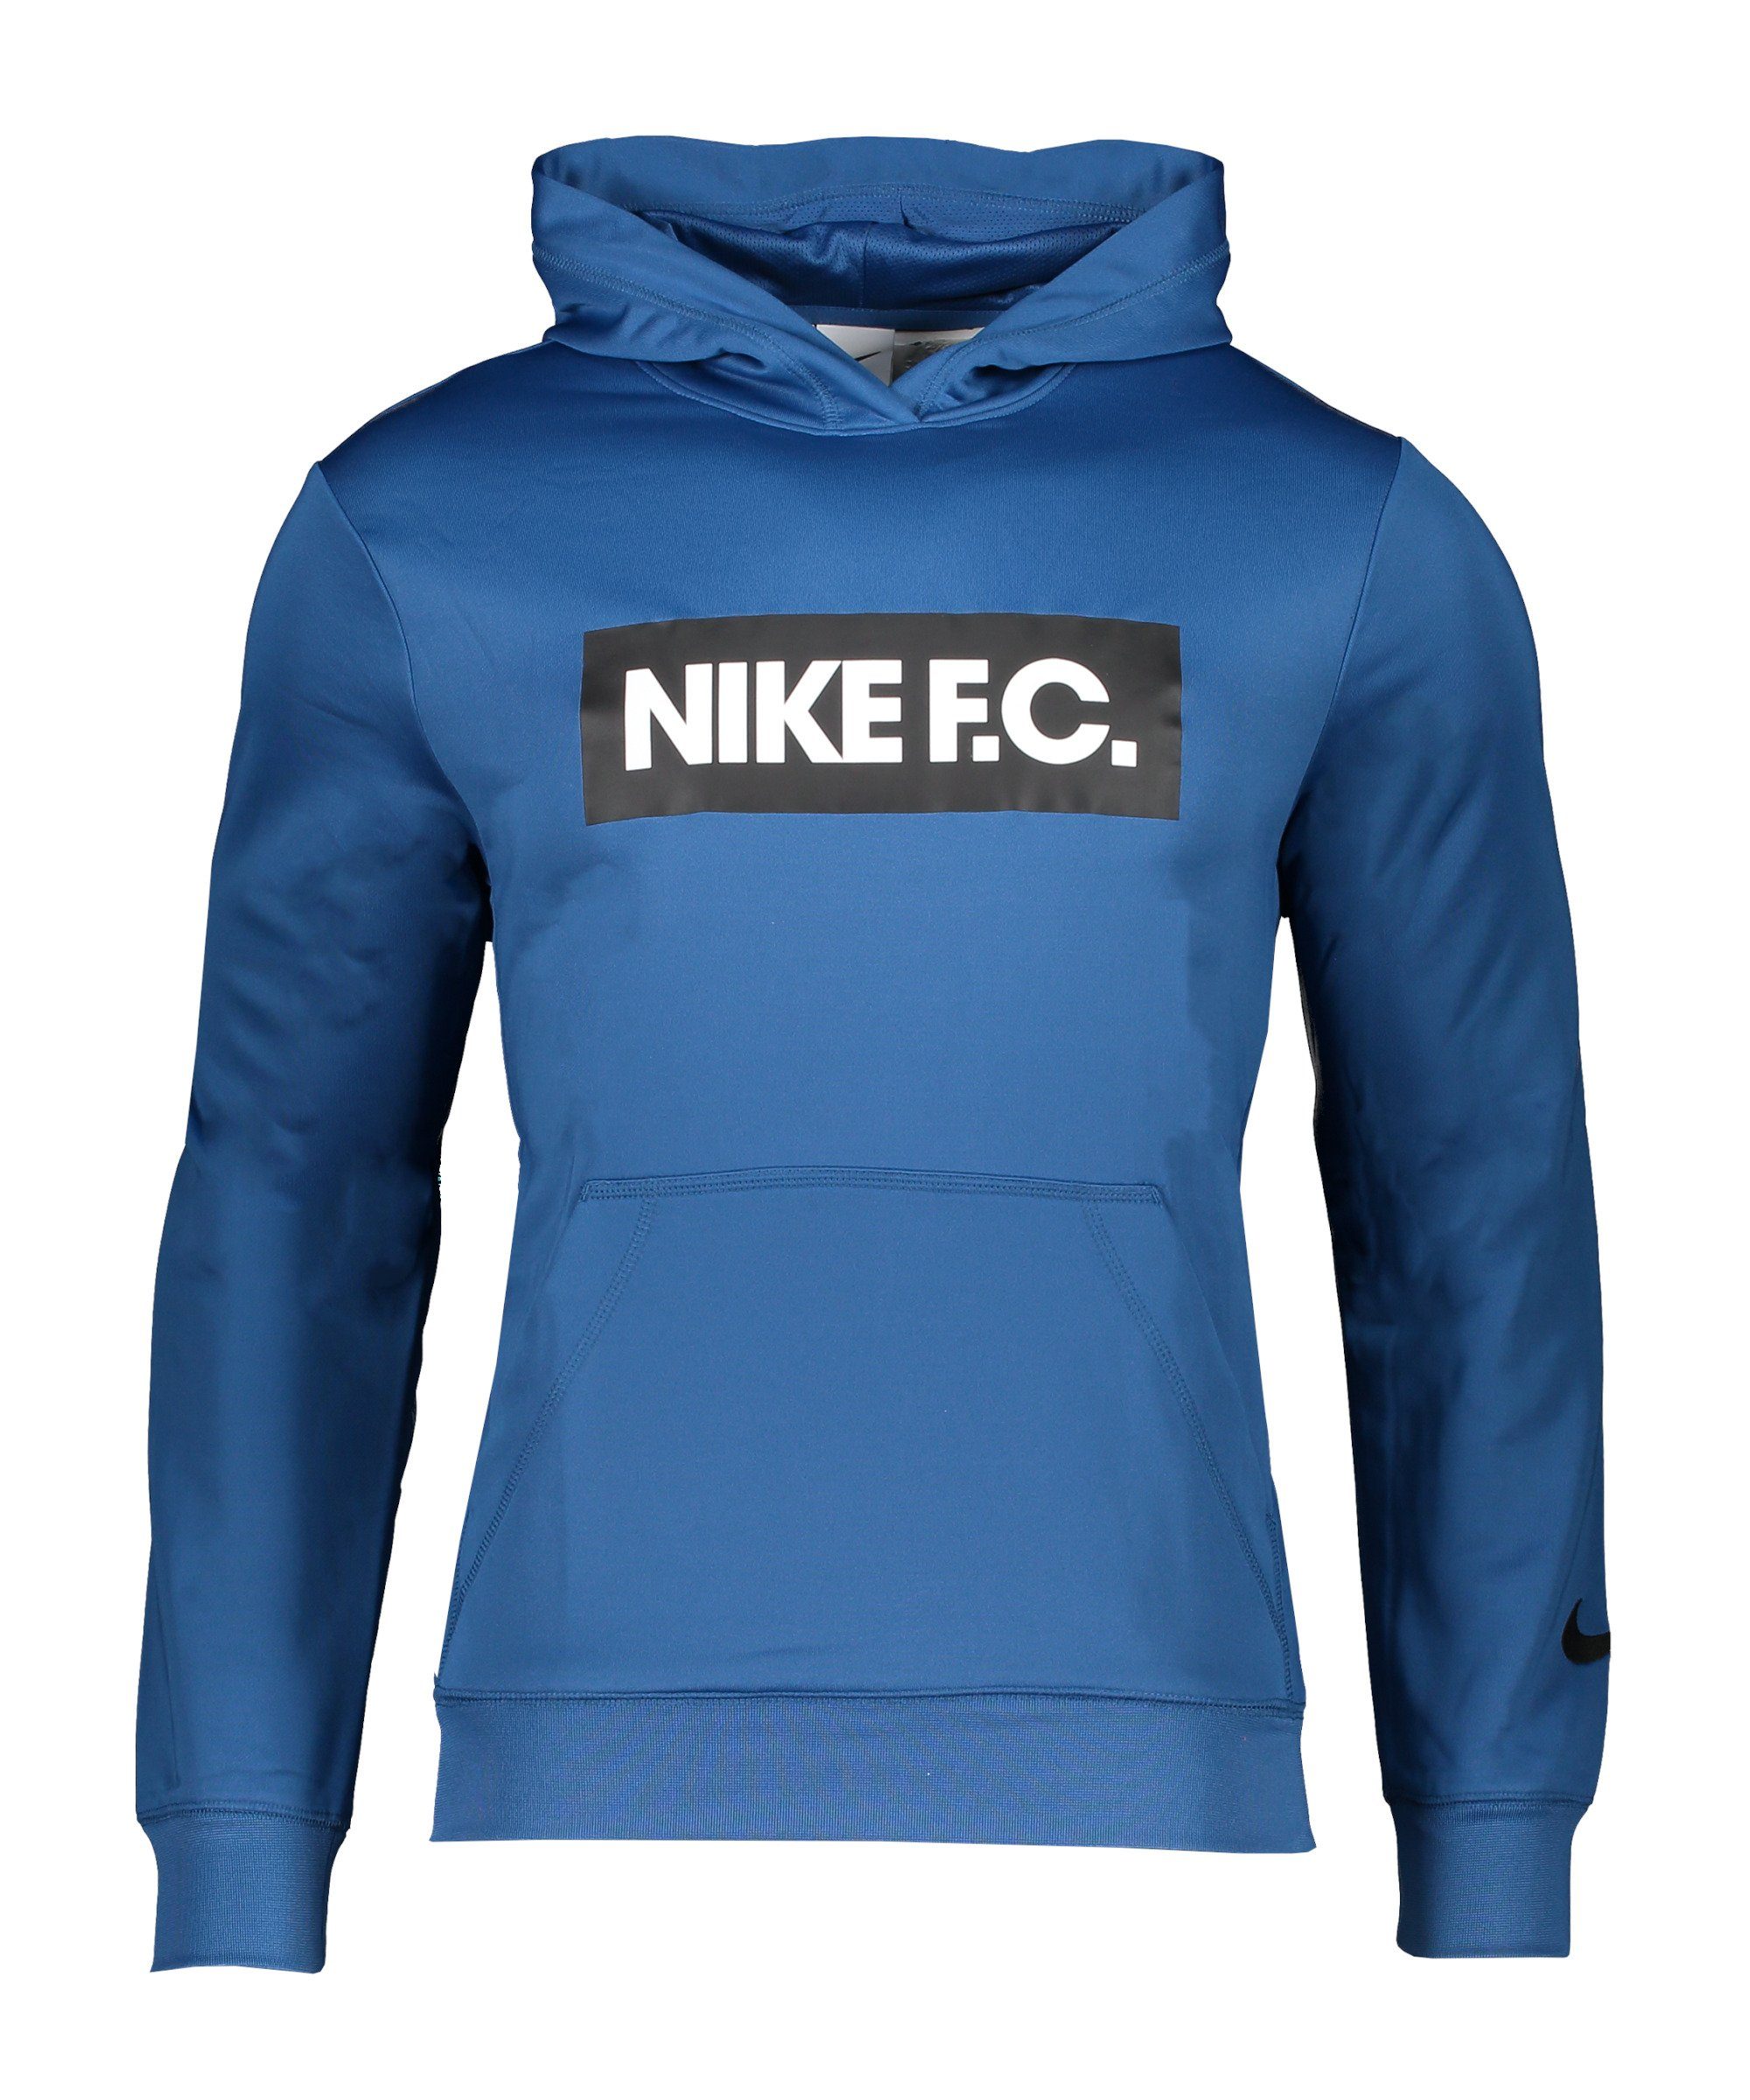 Nike Sportswear Hoody Sweatshirt Fleece blauweissschwarz F.C.